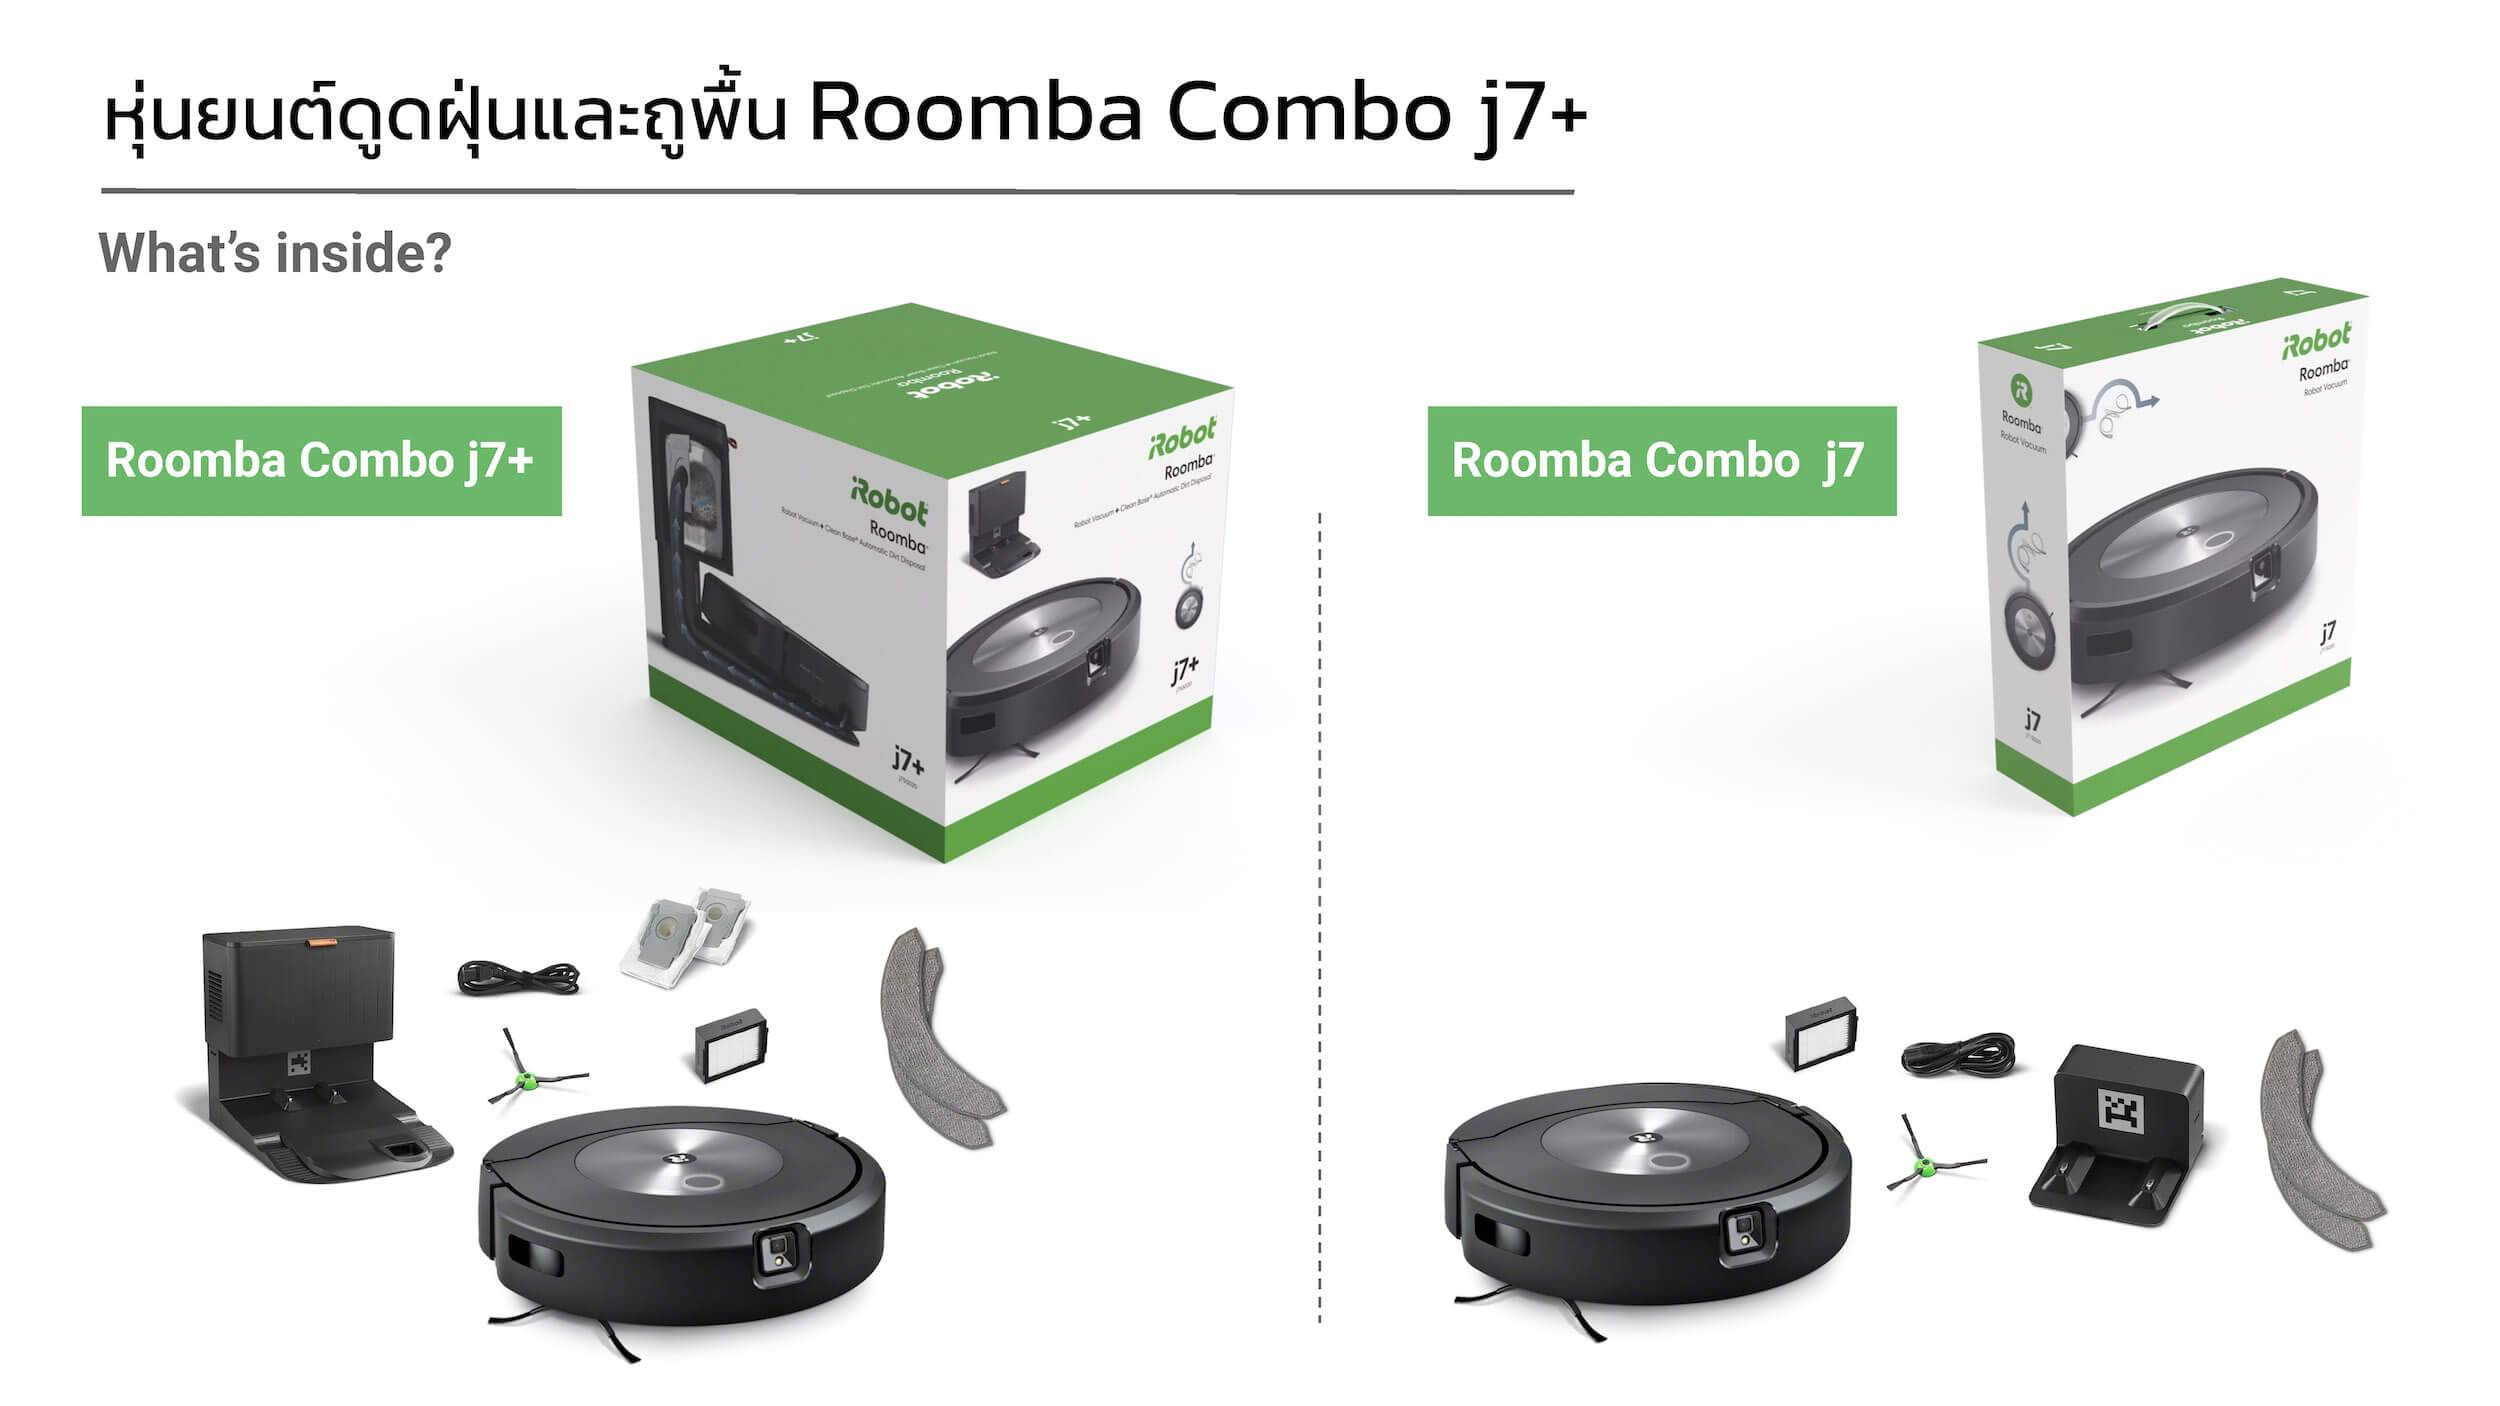 ความต่างของรุ่น Roomba Combo j7+ และ j7 คือมี Clean Base เพิ่มเข้ามา